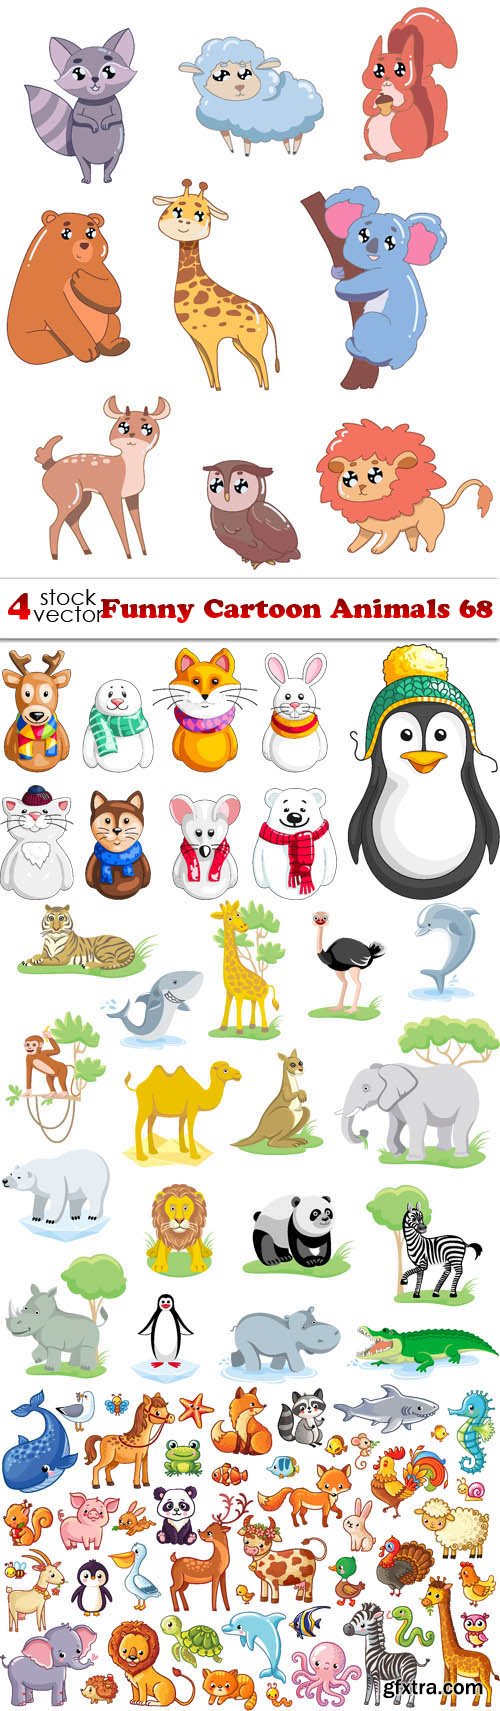 Vectors - Funny Cartoon Animals 68